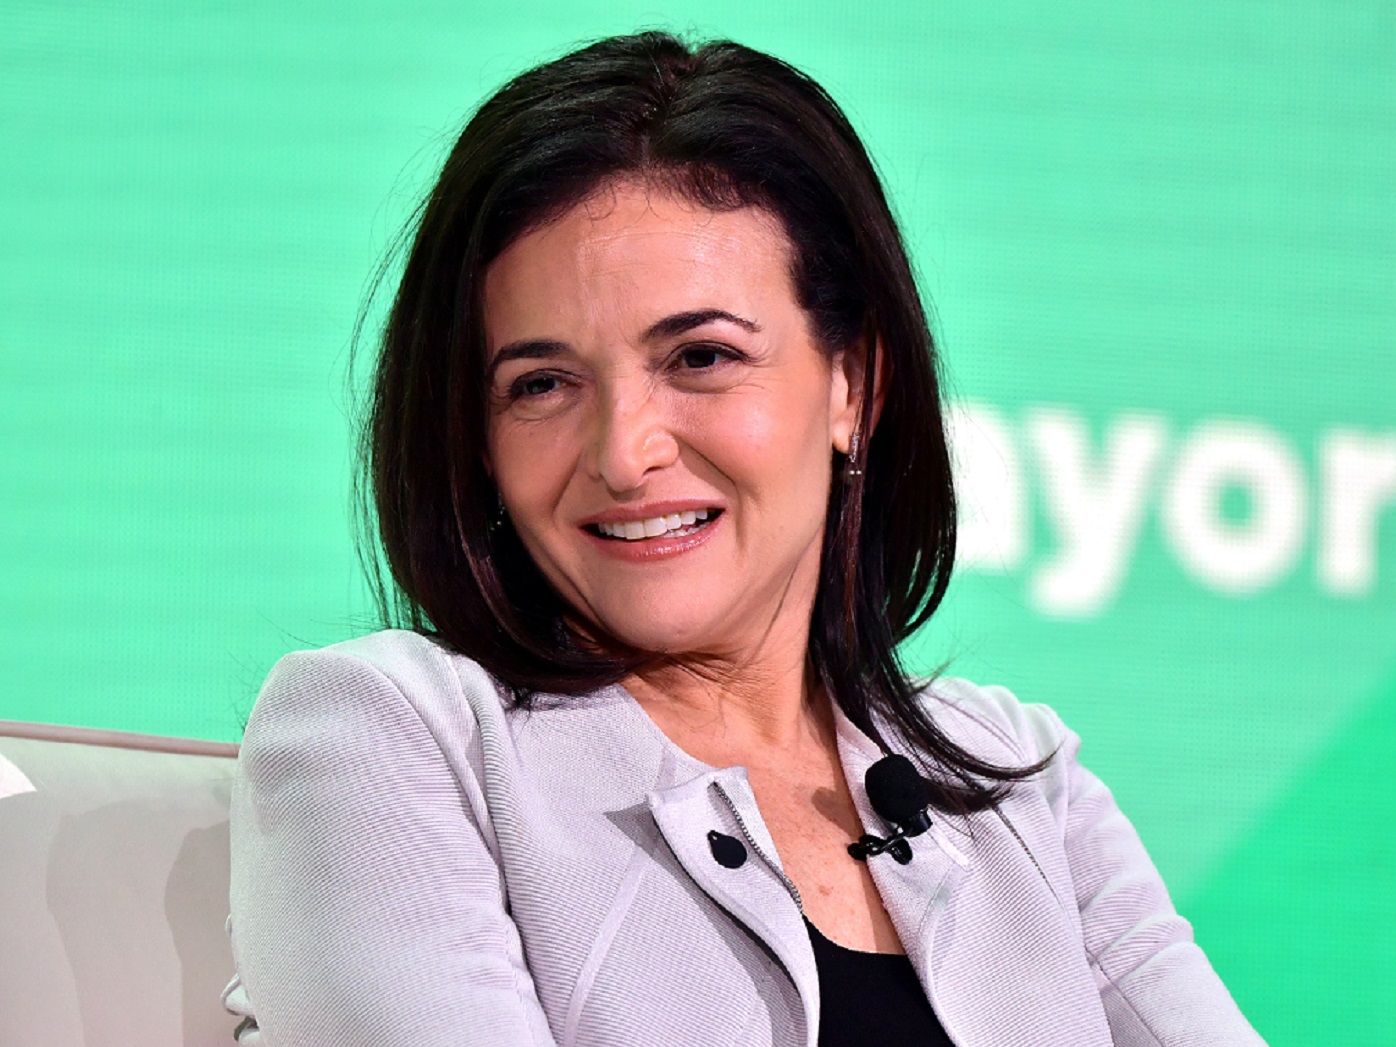 Facebook's Sheryl Sandberg in Boston in 2018